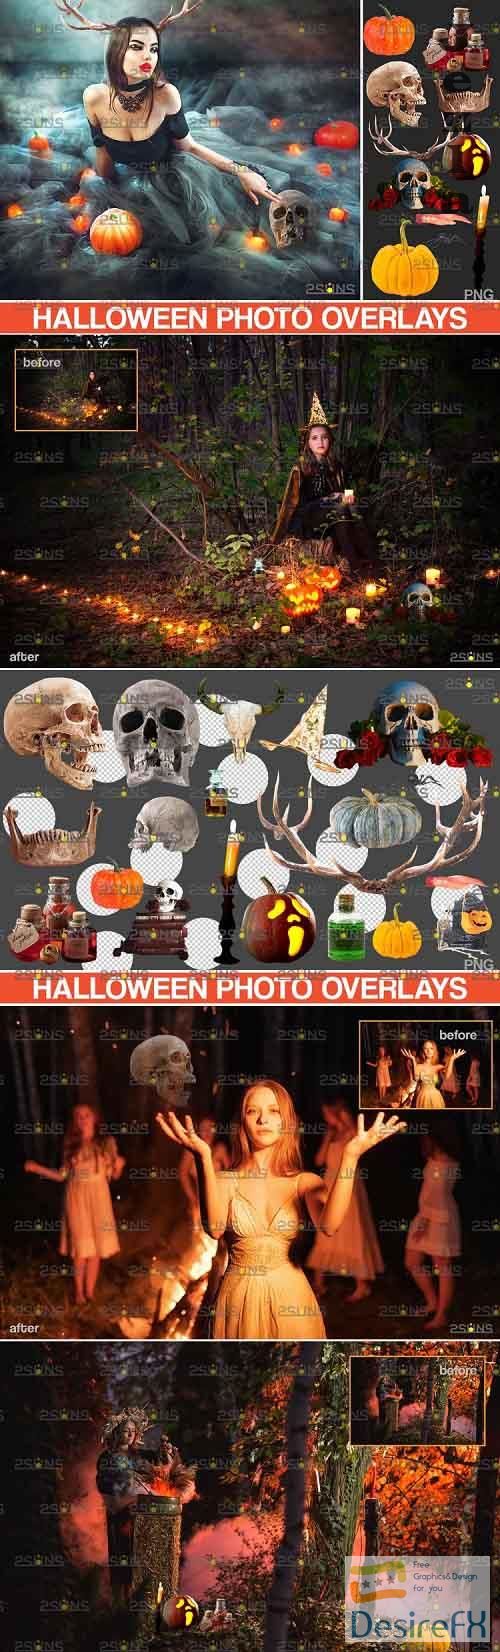 Halloween clipart &amp; Photoshop overlay Halloween overlay - 782103